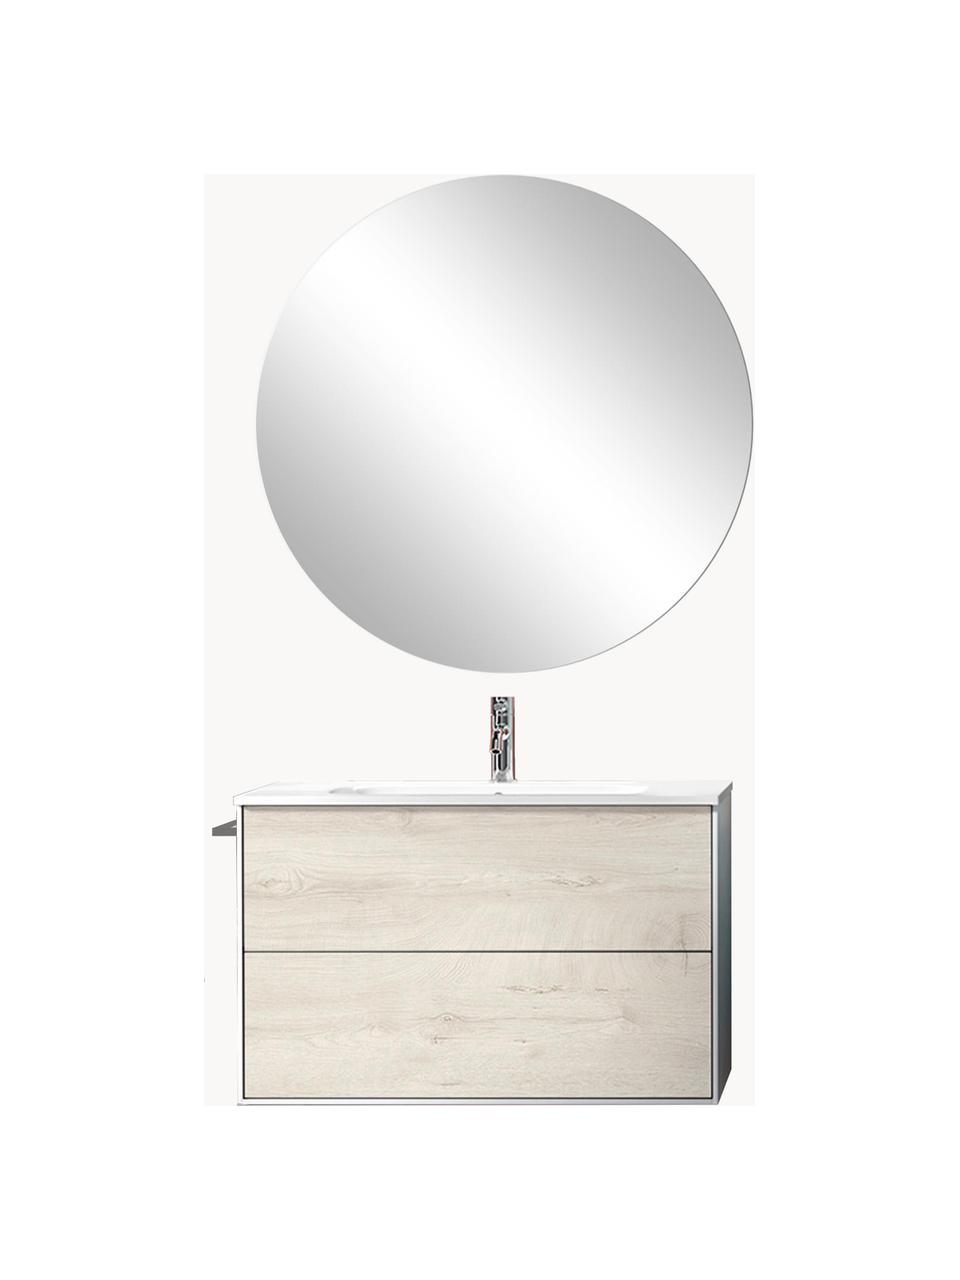 Waschtisch-Set Ago, 4-tlg., Spiegelfläche: Spiegelglas, Rückseite: ABS-Kunststoff, Eichenholz-Optik, Weiß, B 81 x H 190 cm